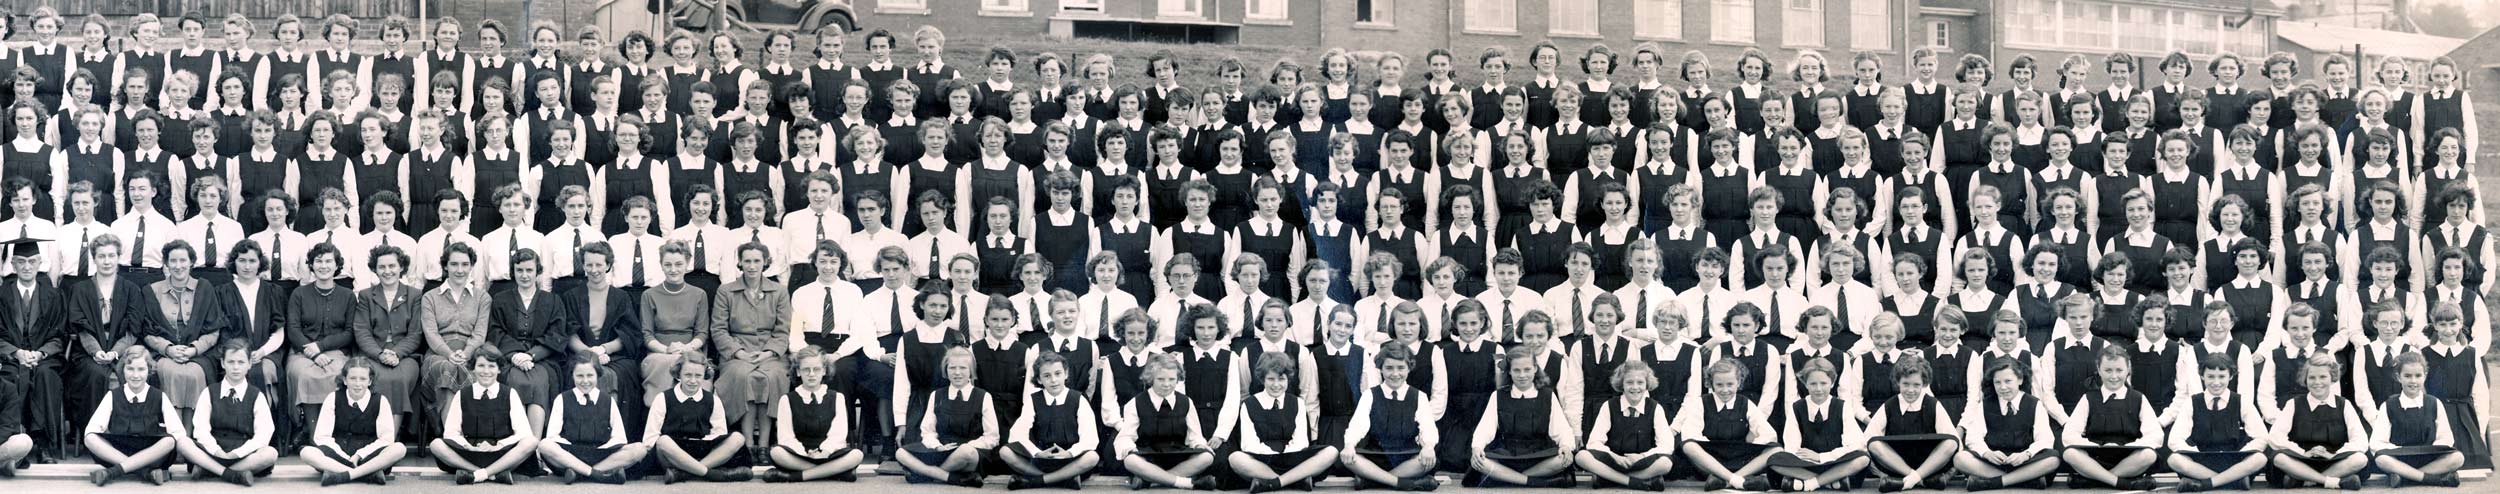 East Dean GS 1954 - Girls